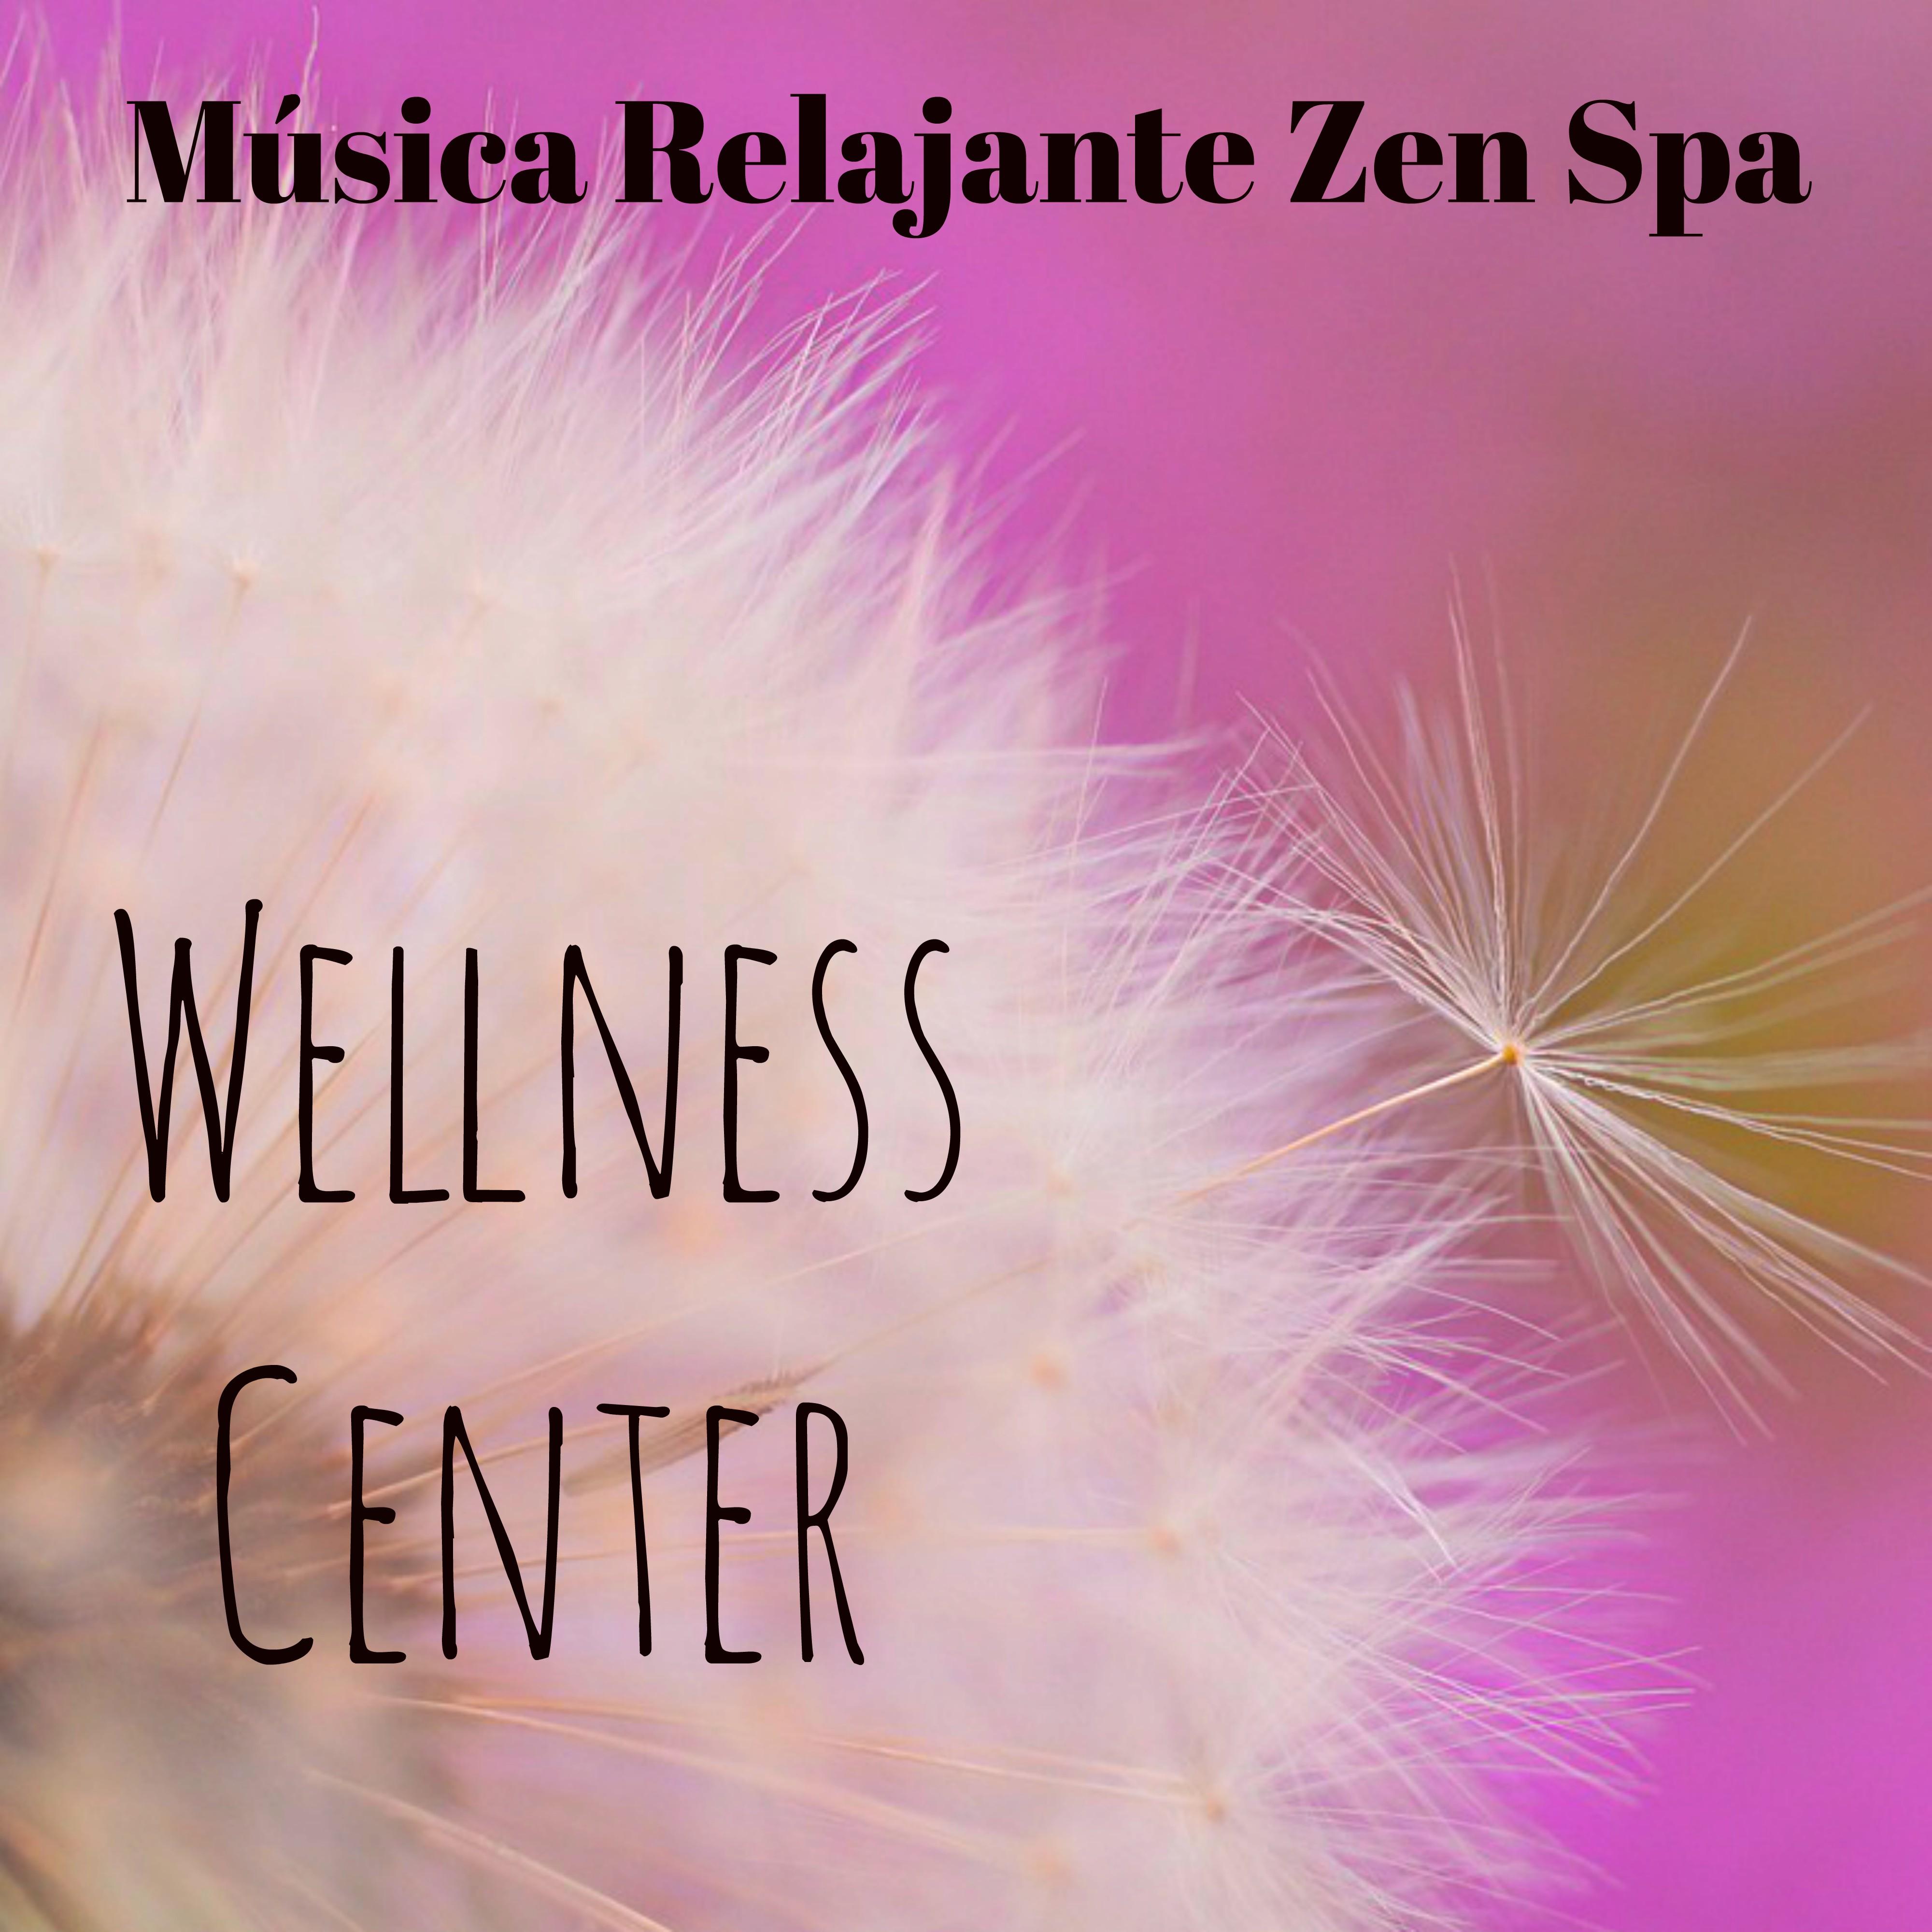 Wellness Center  Mu sica Relajante Zen Spa para Yoga Ejercicios Terapia de Masajes Salud y Bien Estar con Sonidos de la Naturaleza Instrumentales New Age